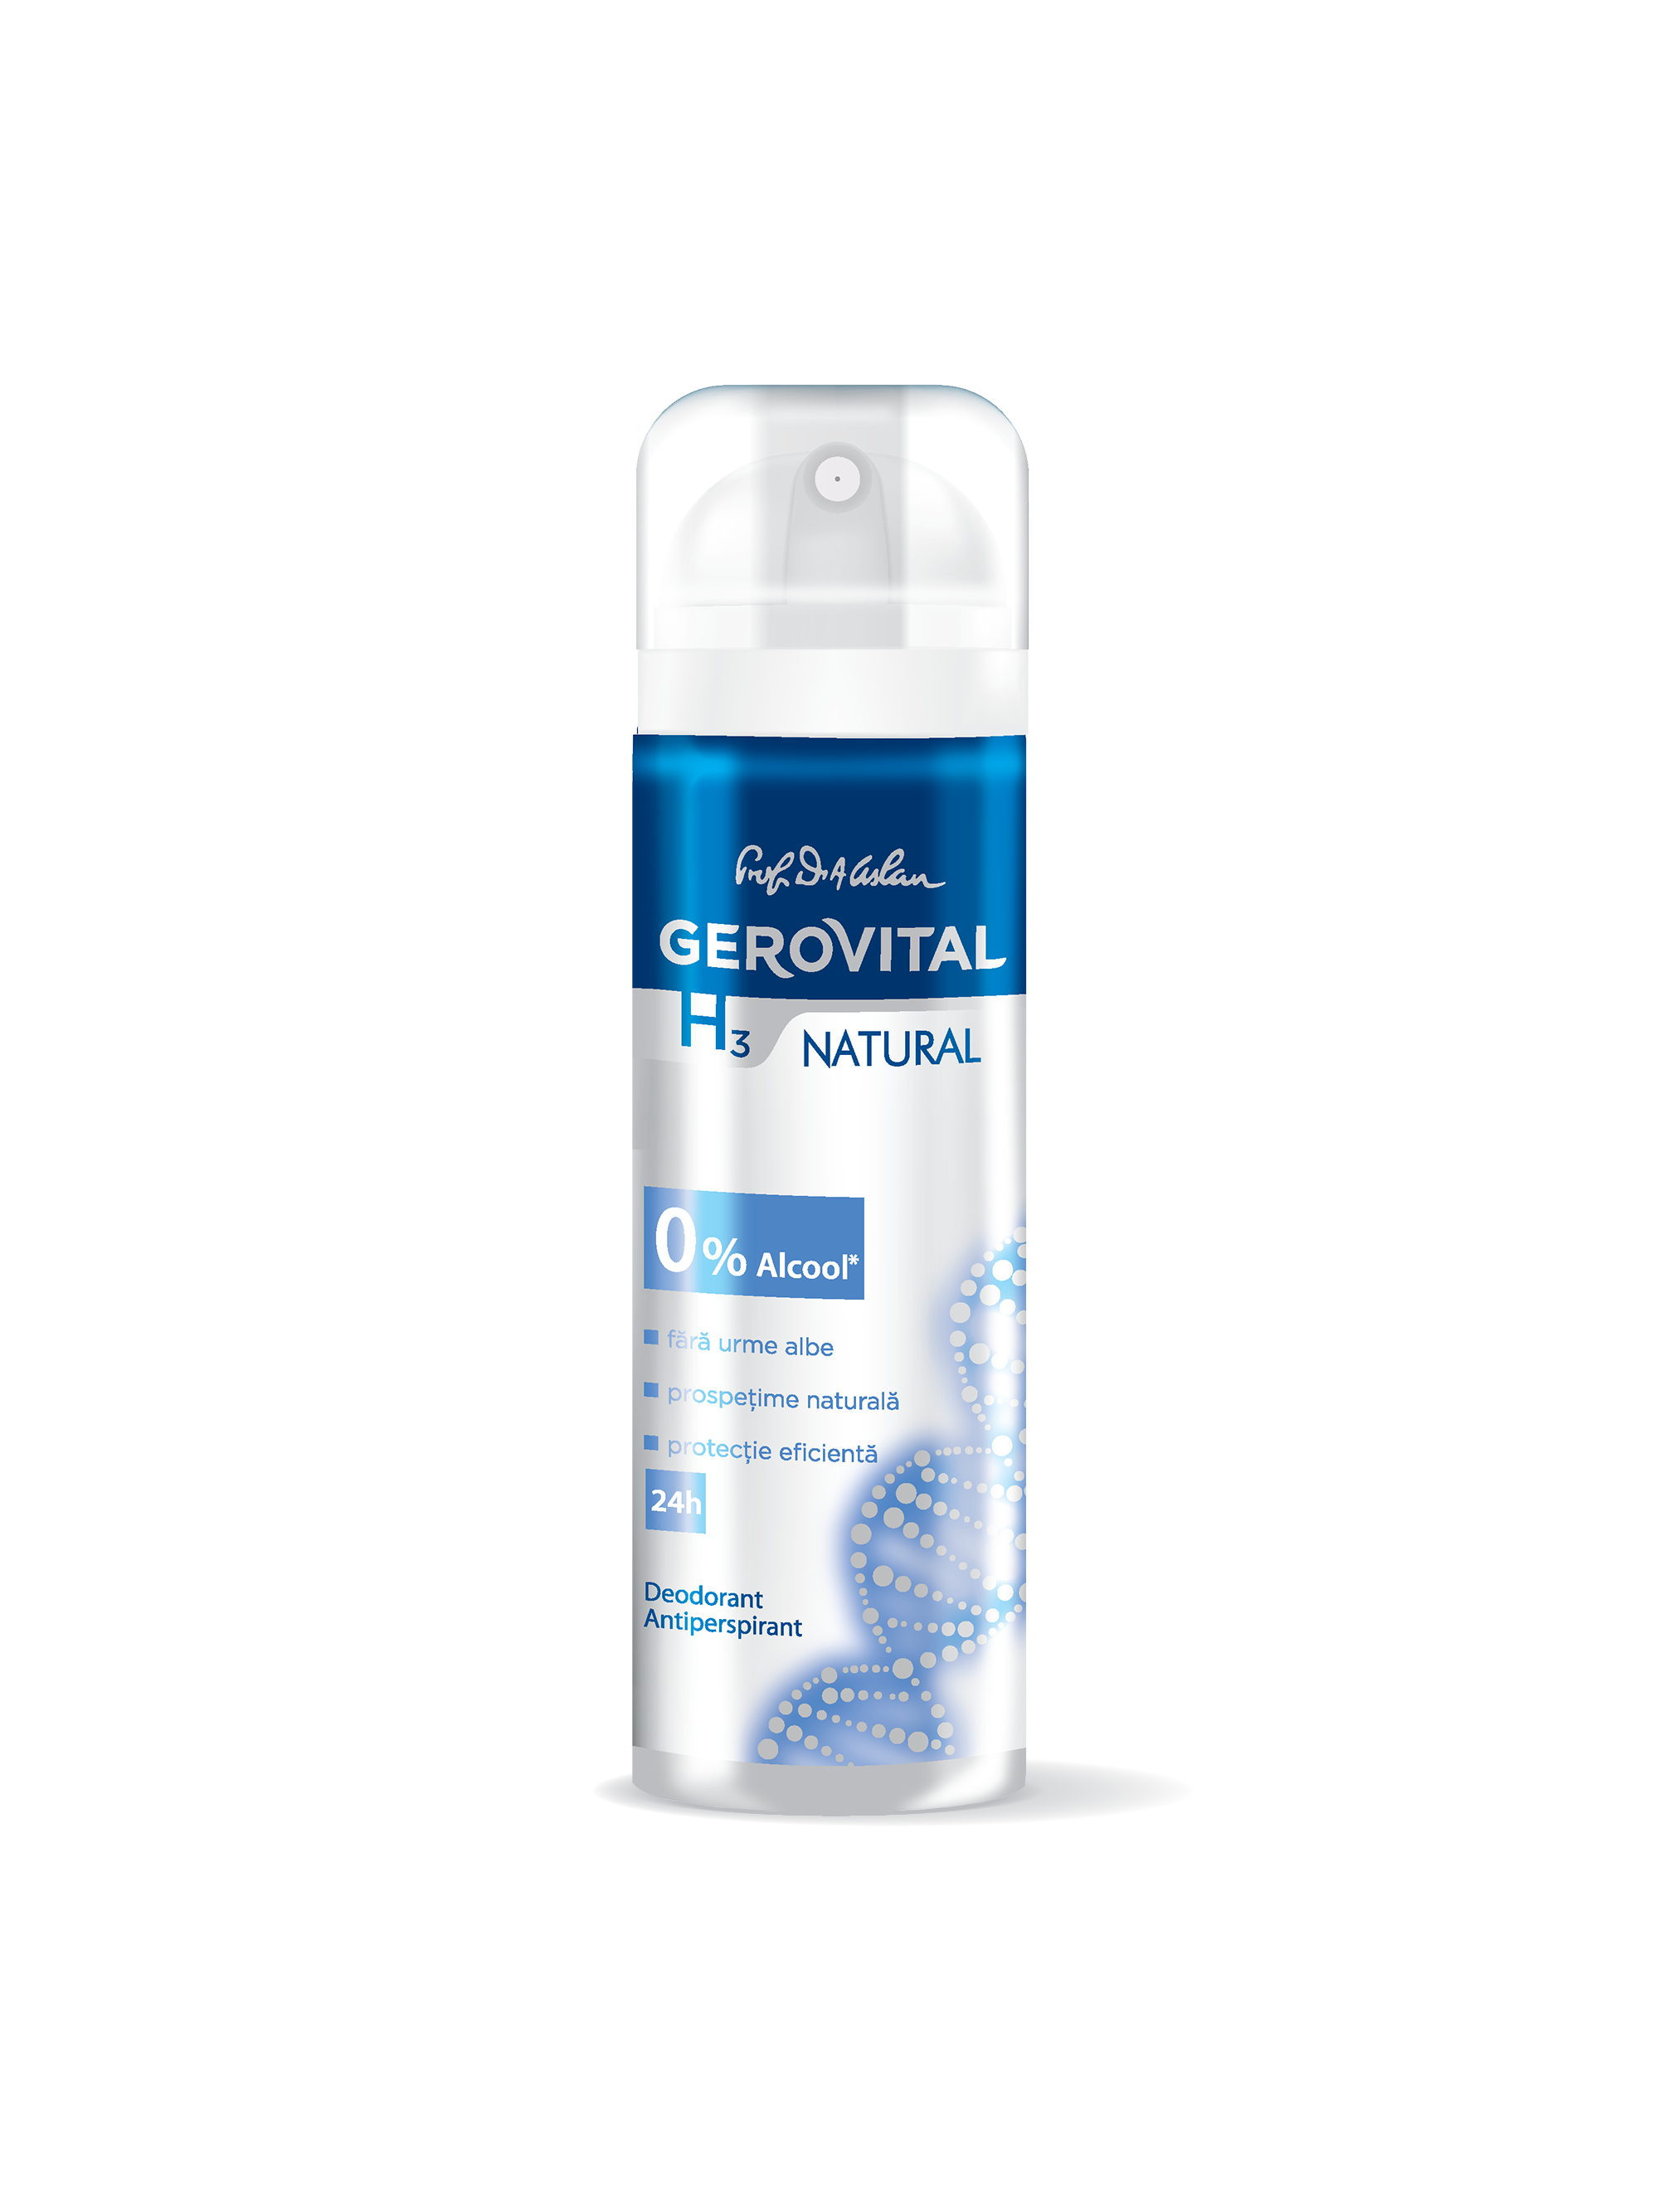 Deodorant Antiperspirant Gerovital H3 - Natural